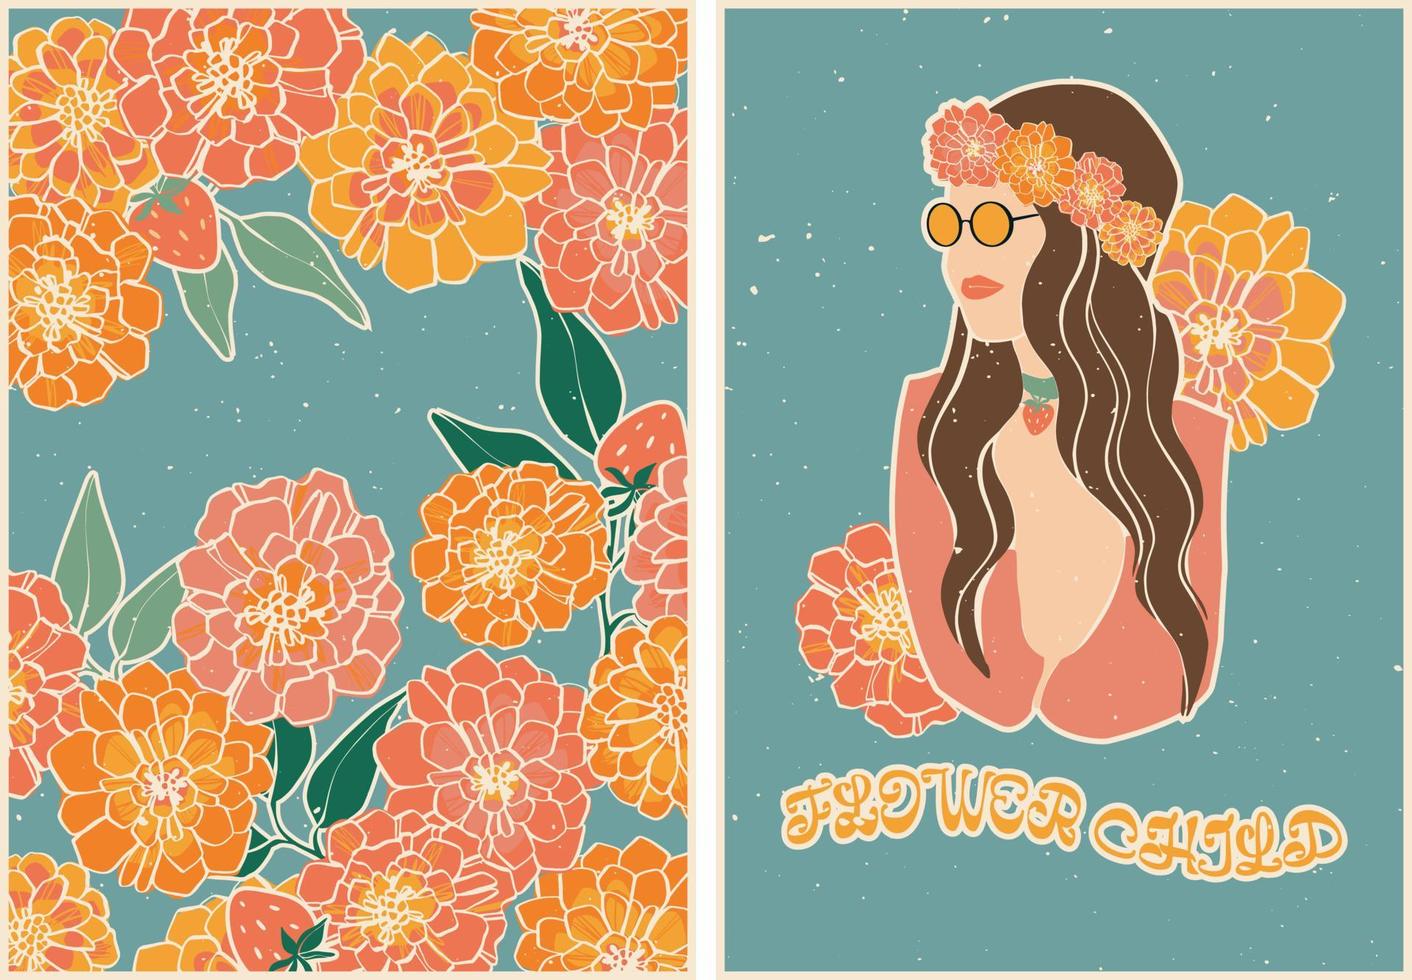 ensemble d'affiches de style rétro avec des fleurs, des fraises et une fille dans une couronne florale et des lunettes de soleil. style rétro vintage. Années 60, 70, hippies. ensemble de cartes postales, conception d'affiches. vecteur